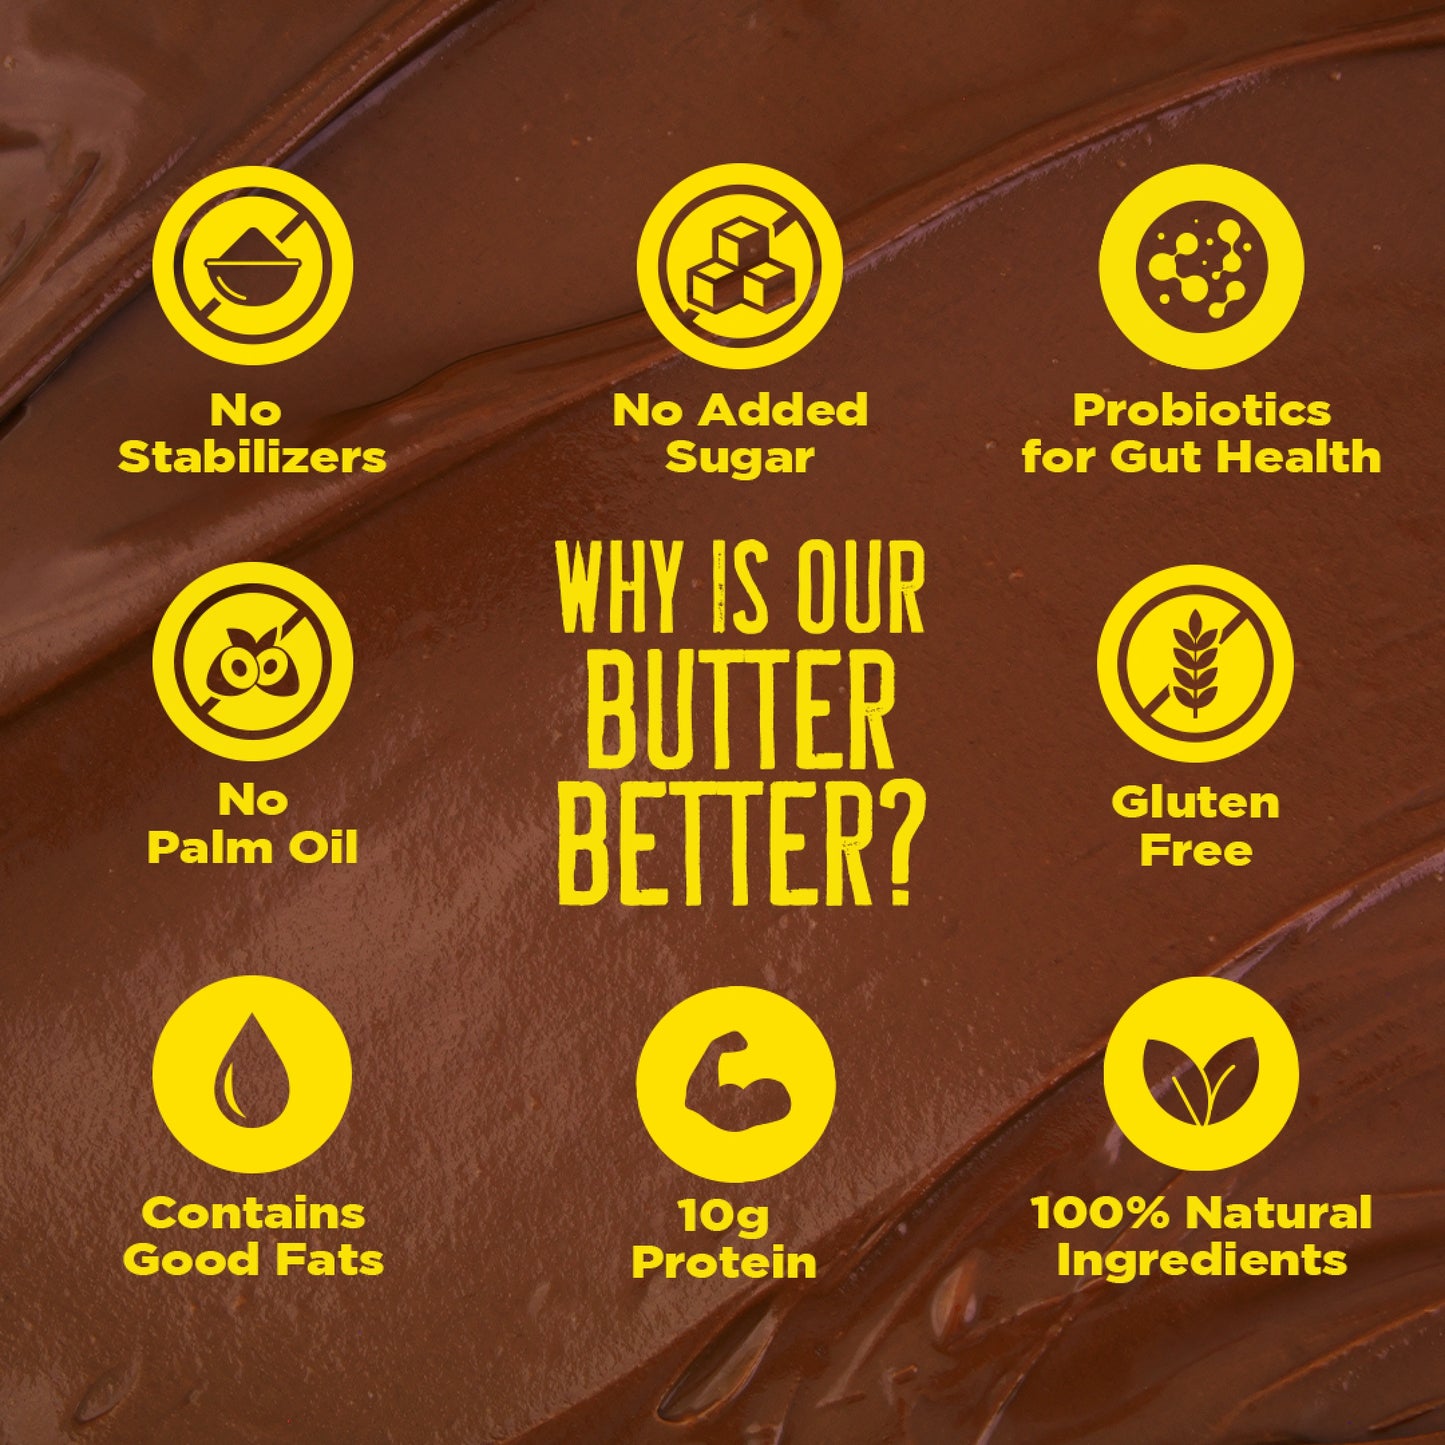 Crunchy Dark Chocolate Peanut Butter with Probiotics 1 Kg